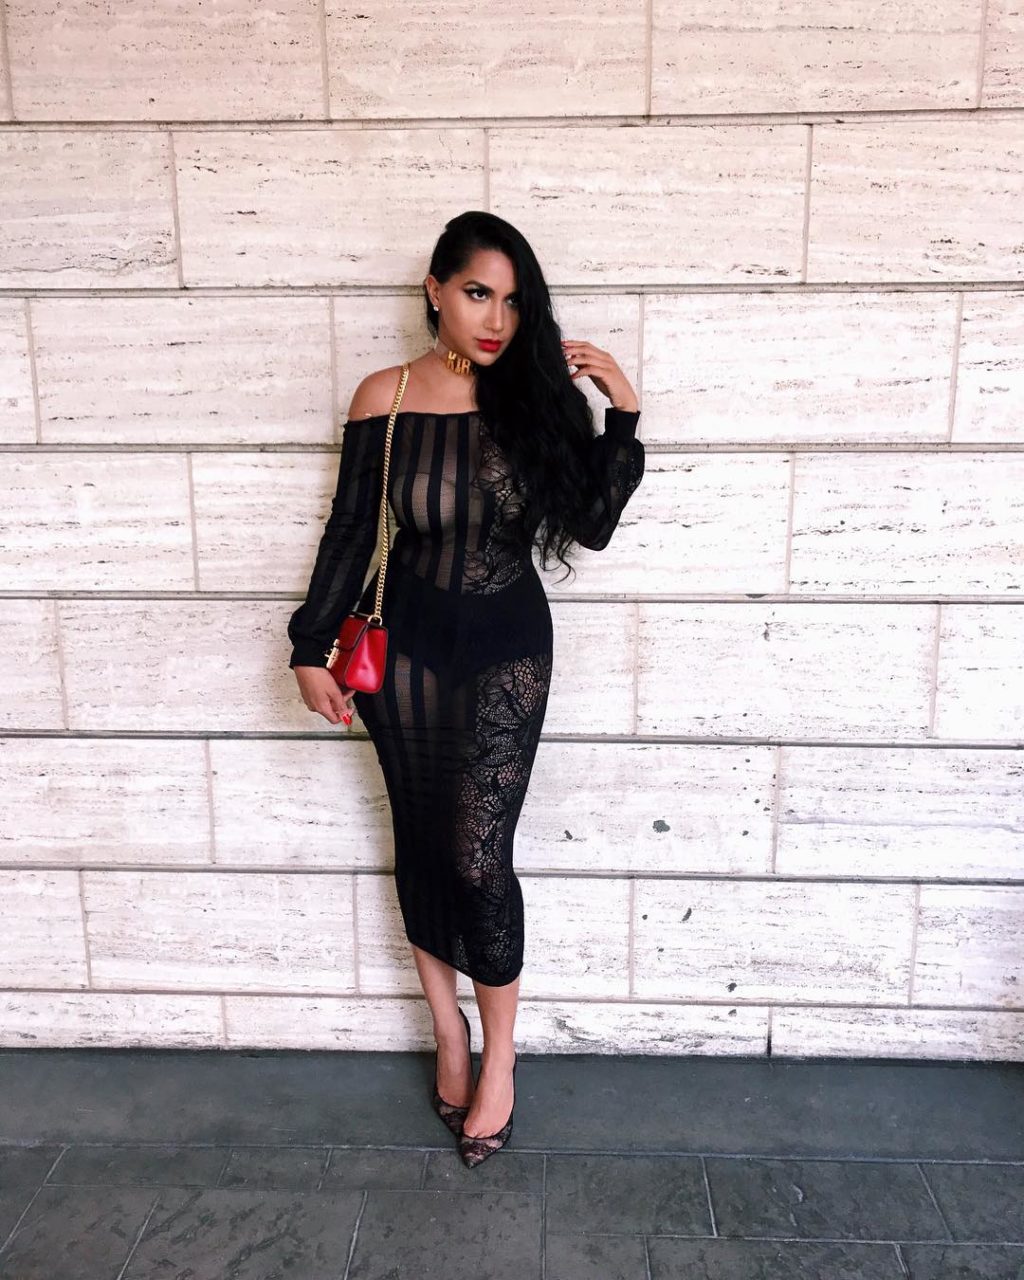 Maxi ricatto a luci rosse: la Kardashian indo-canadese arresta a Venezia